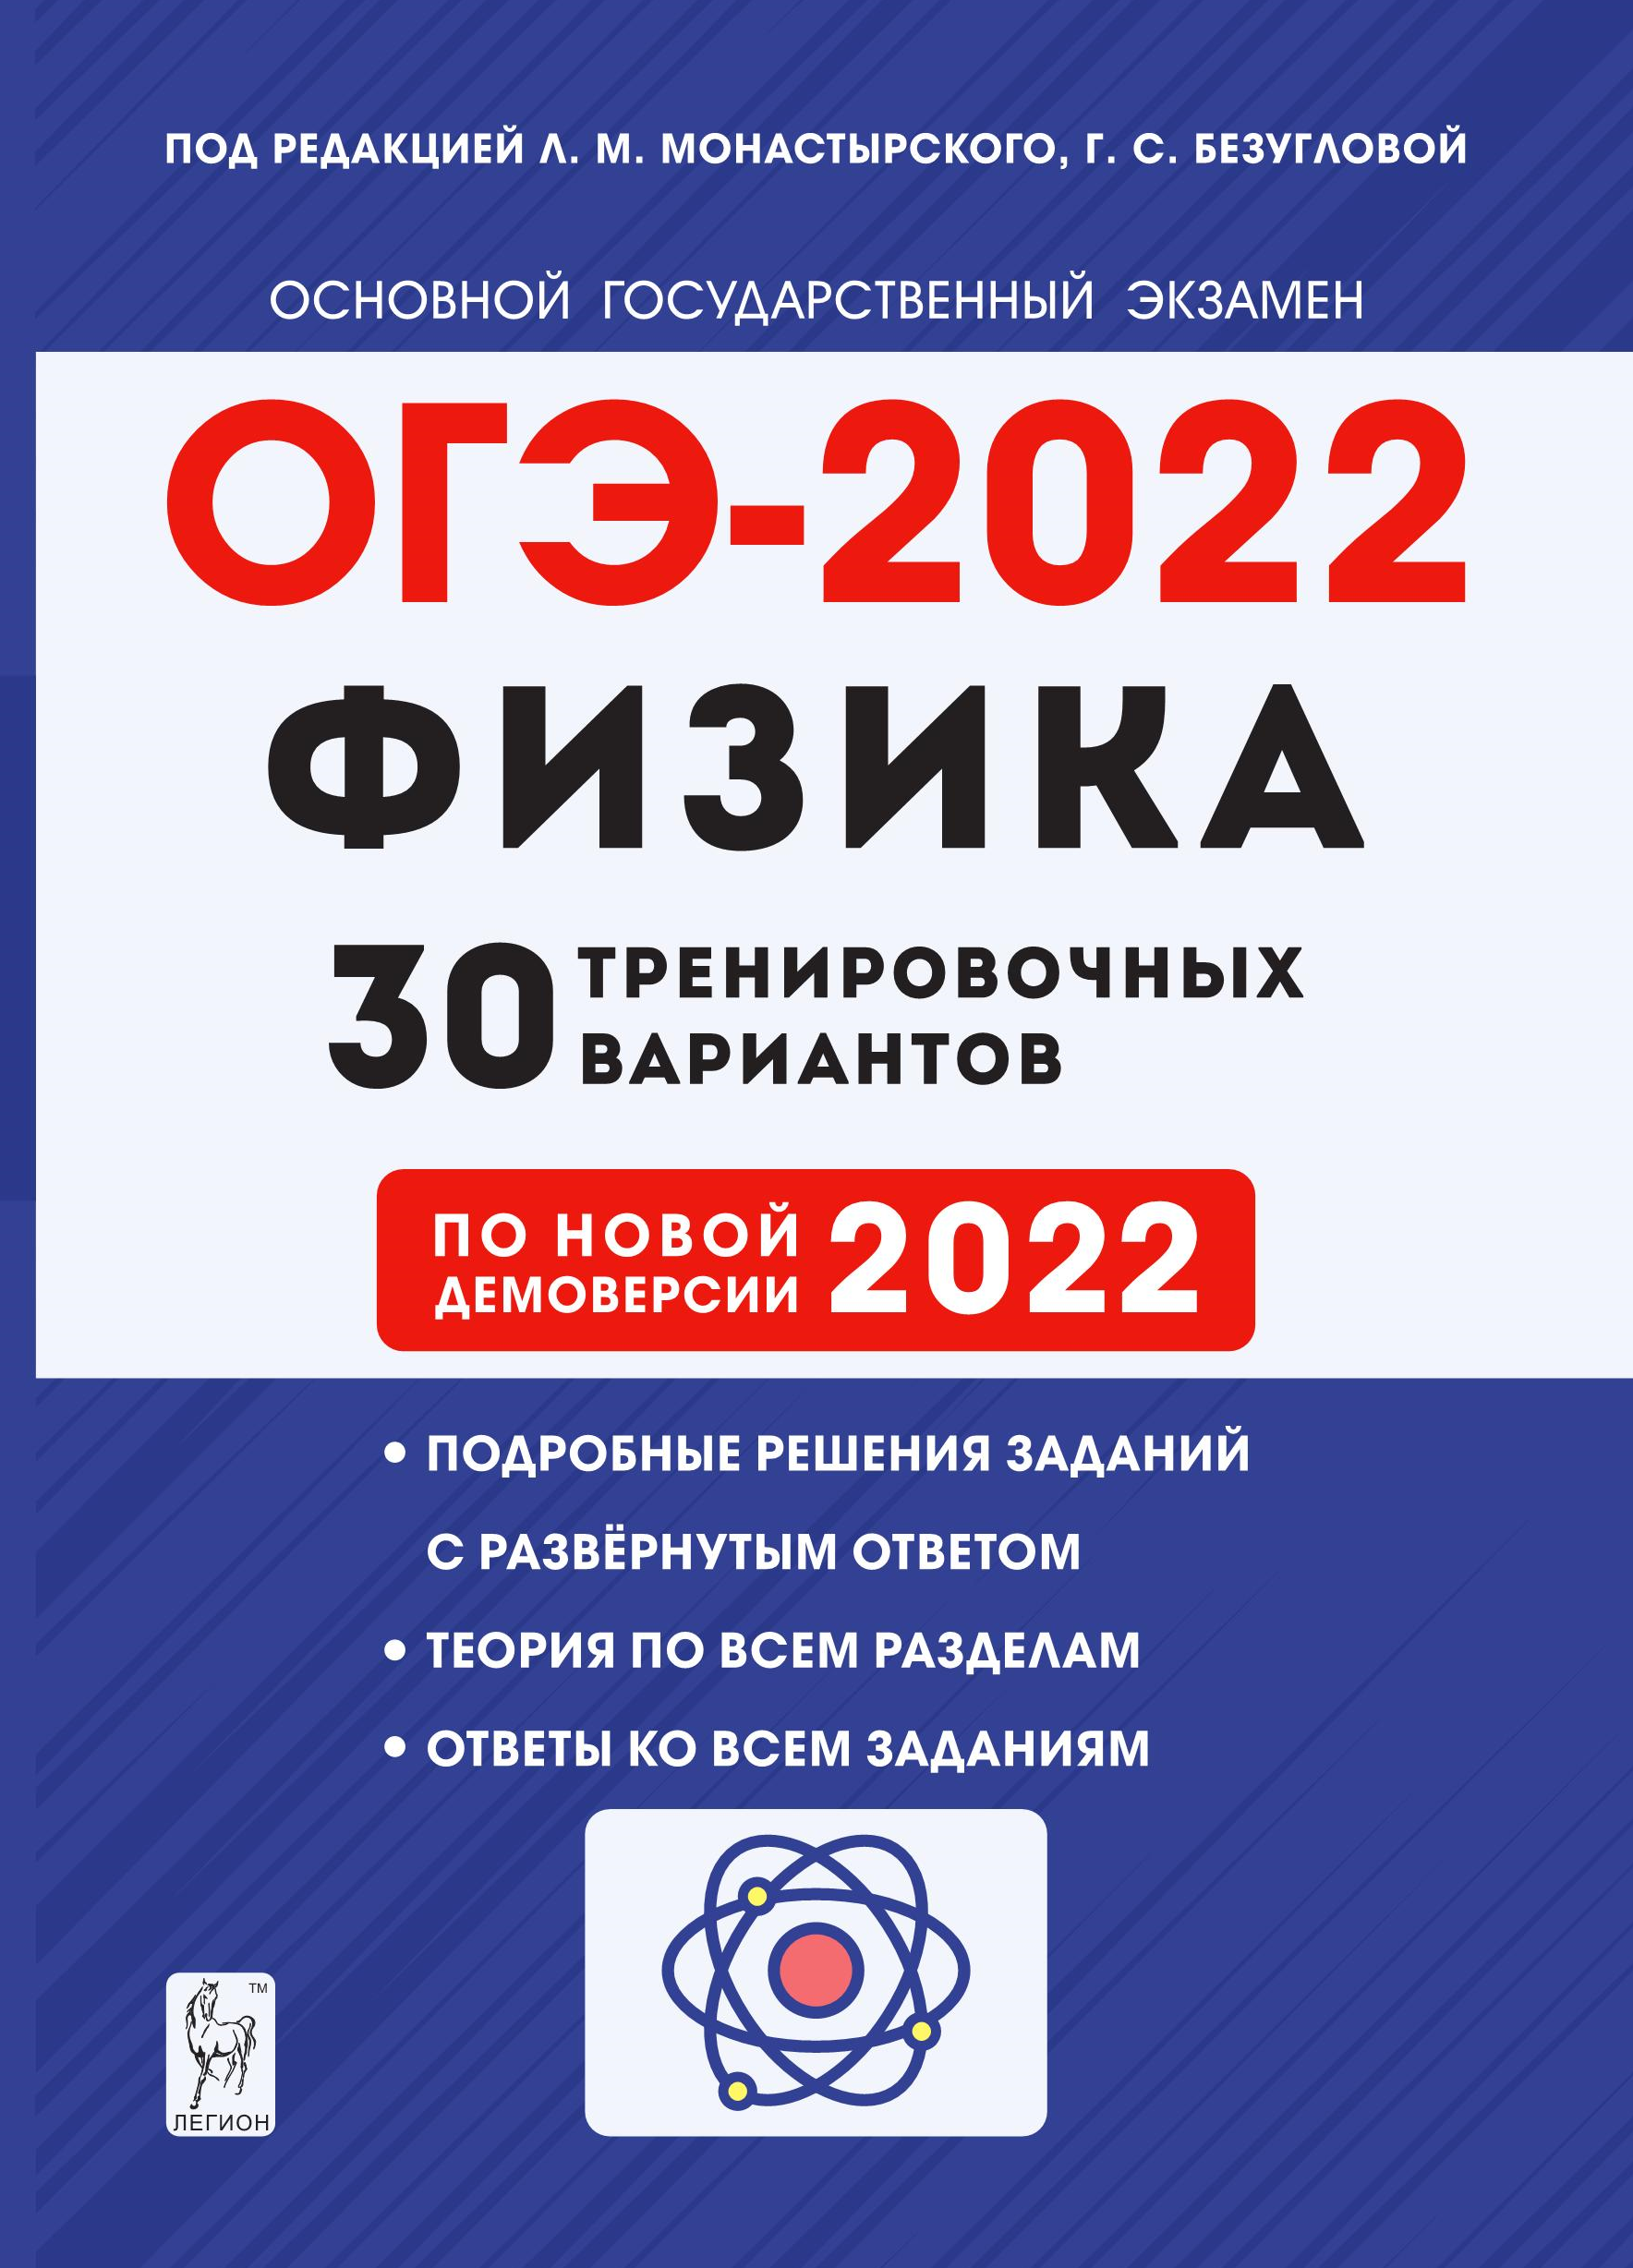 Физика. Подготовка к ОГЭ-2022. 9 класс. 30 тренировочных вариантов по демоверсии 2022 года